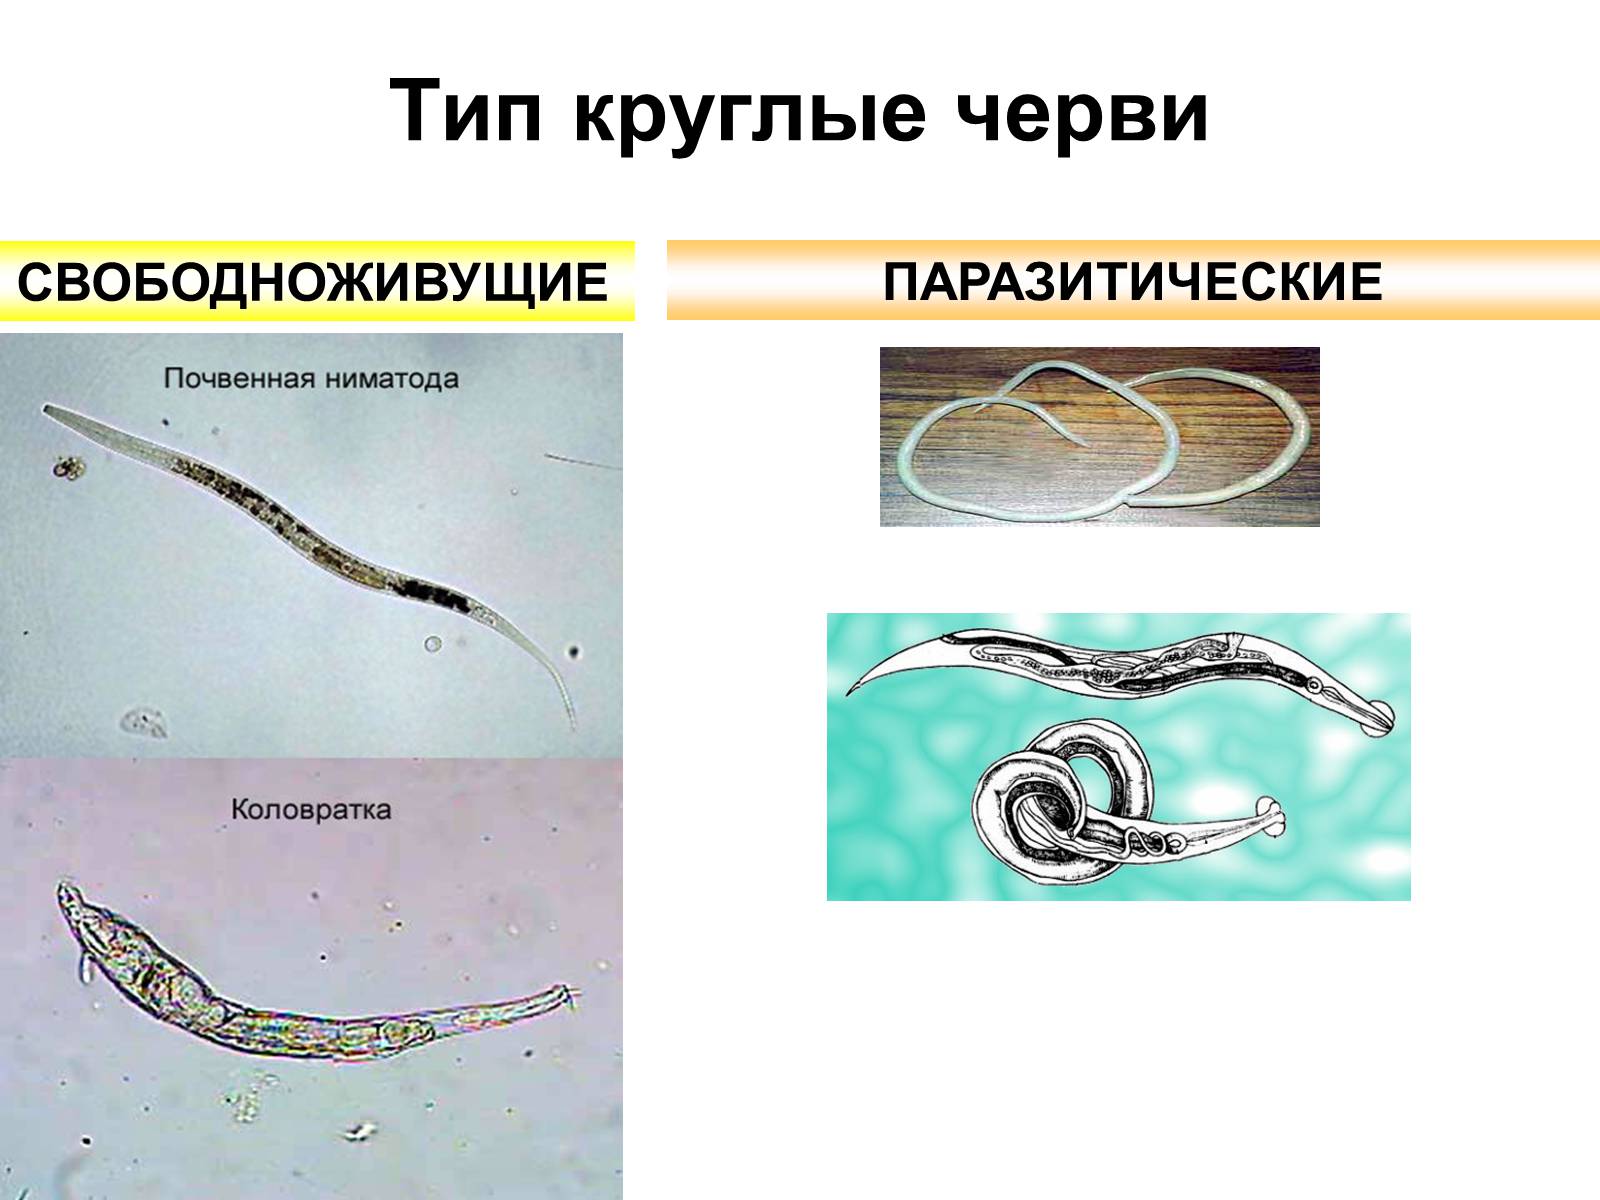 Тело круглых червей разделено на